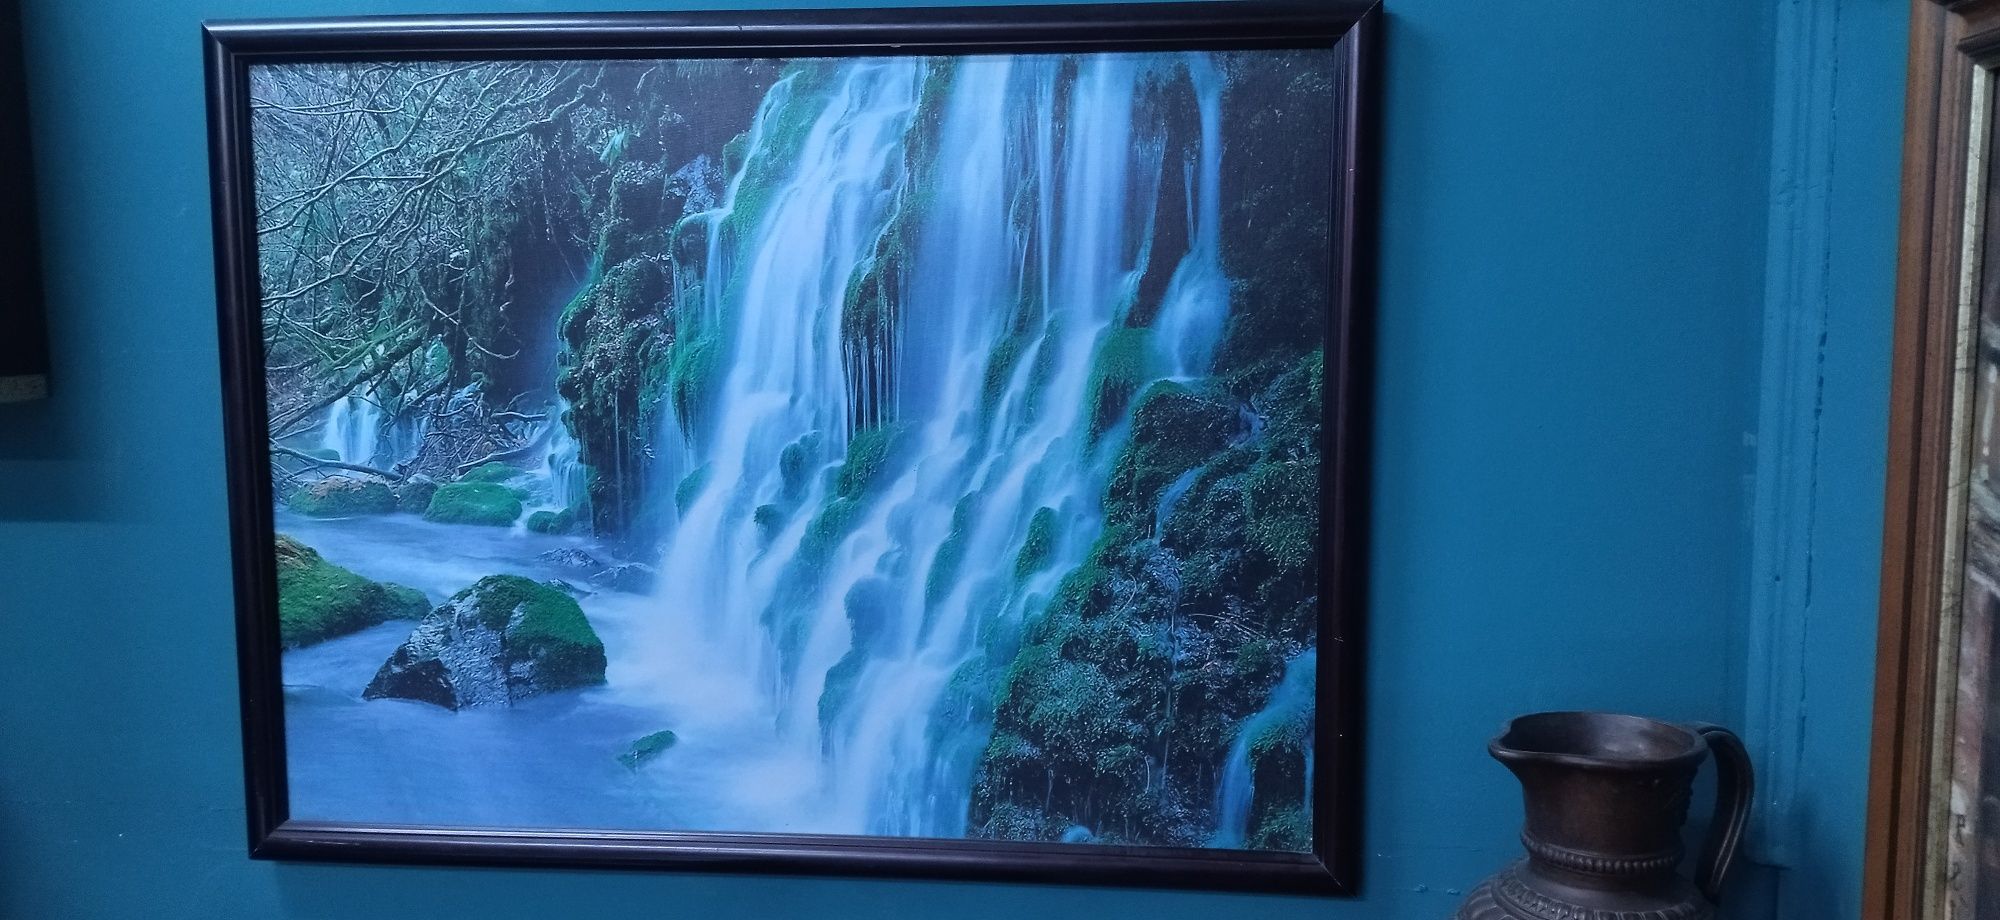 Картина, снимка, принт, водопад.